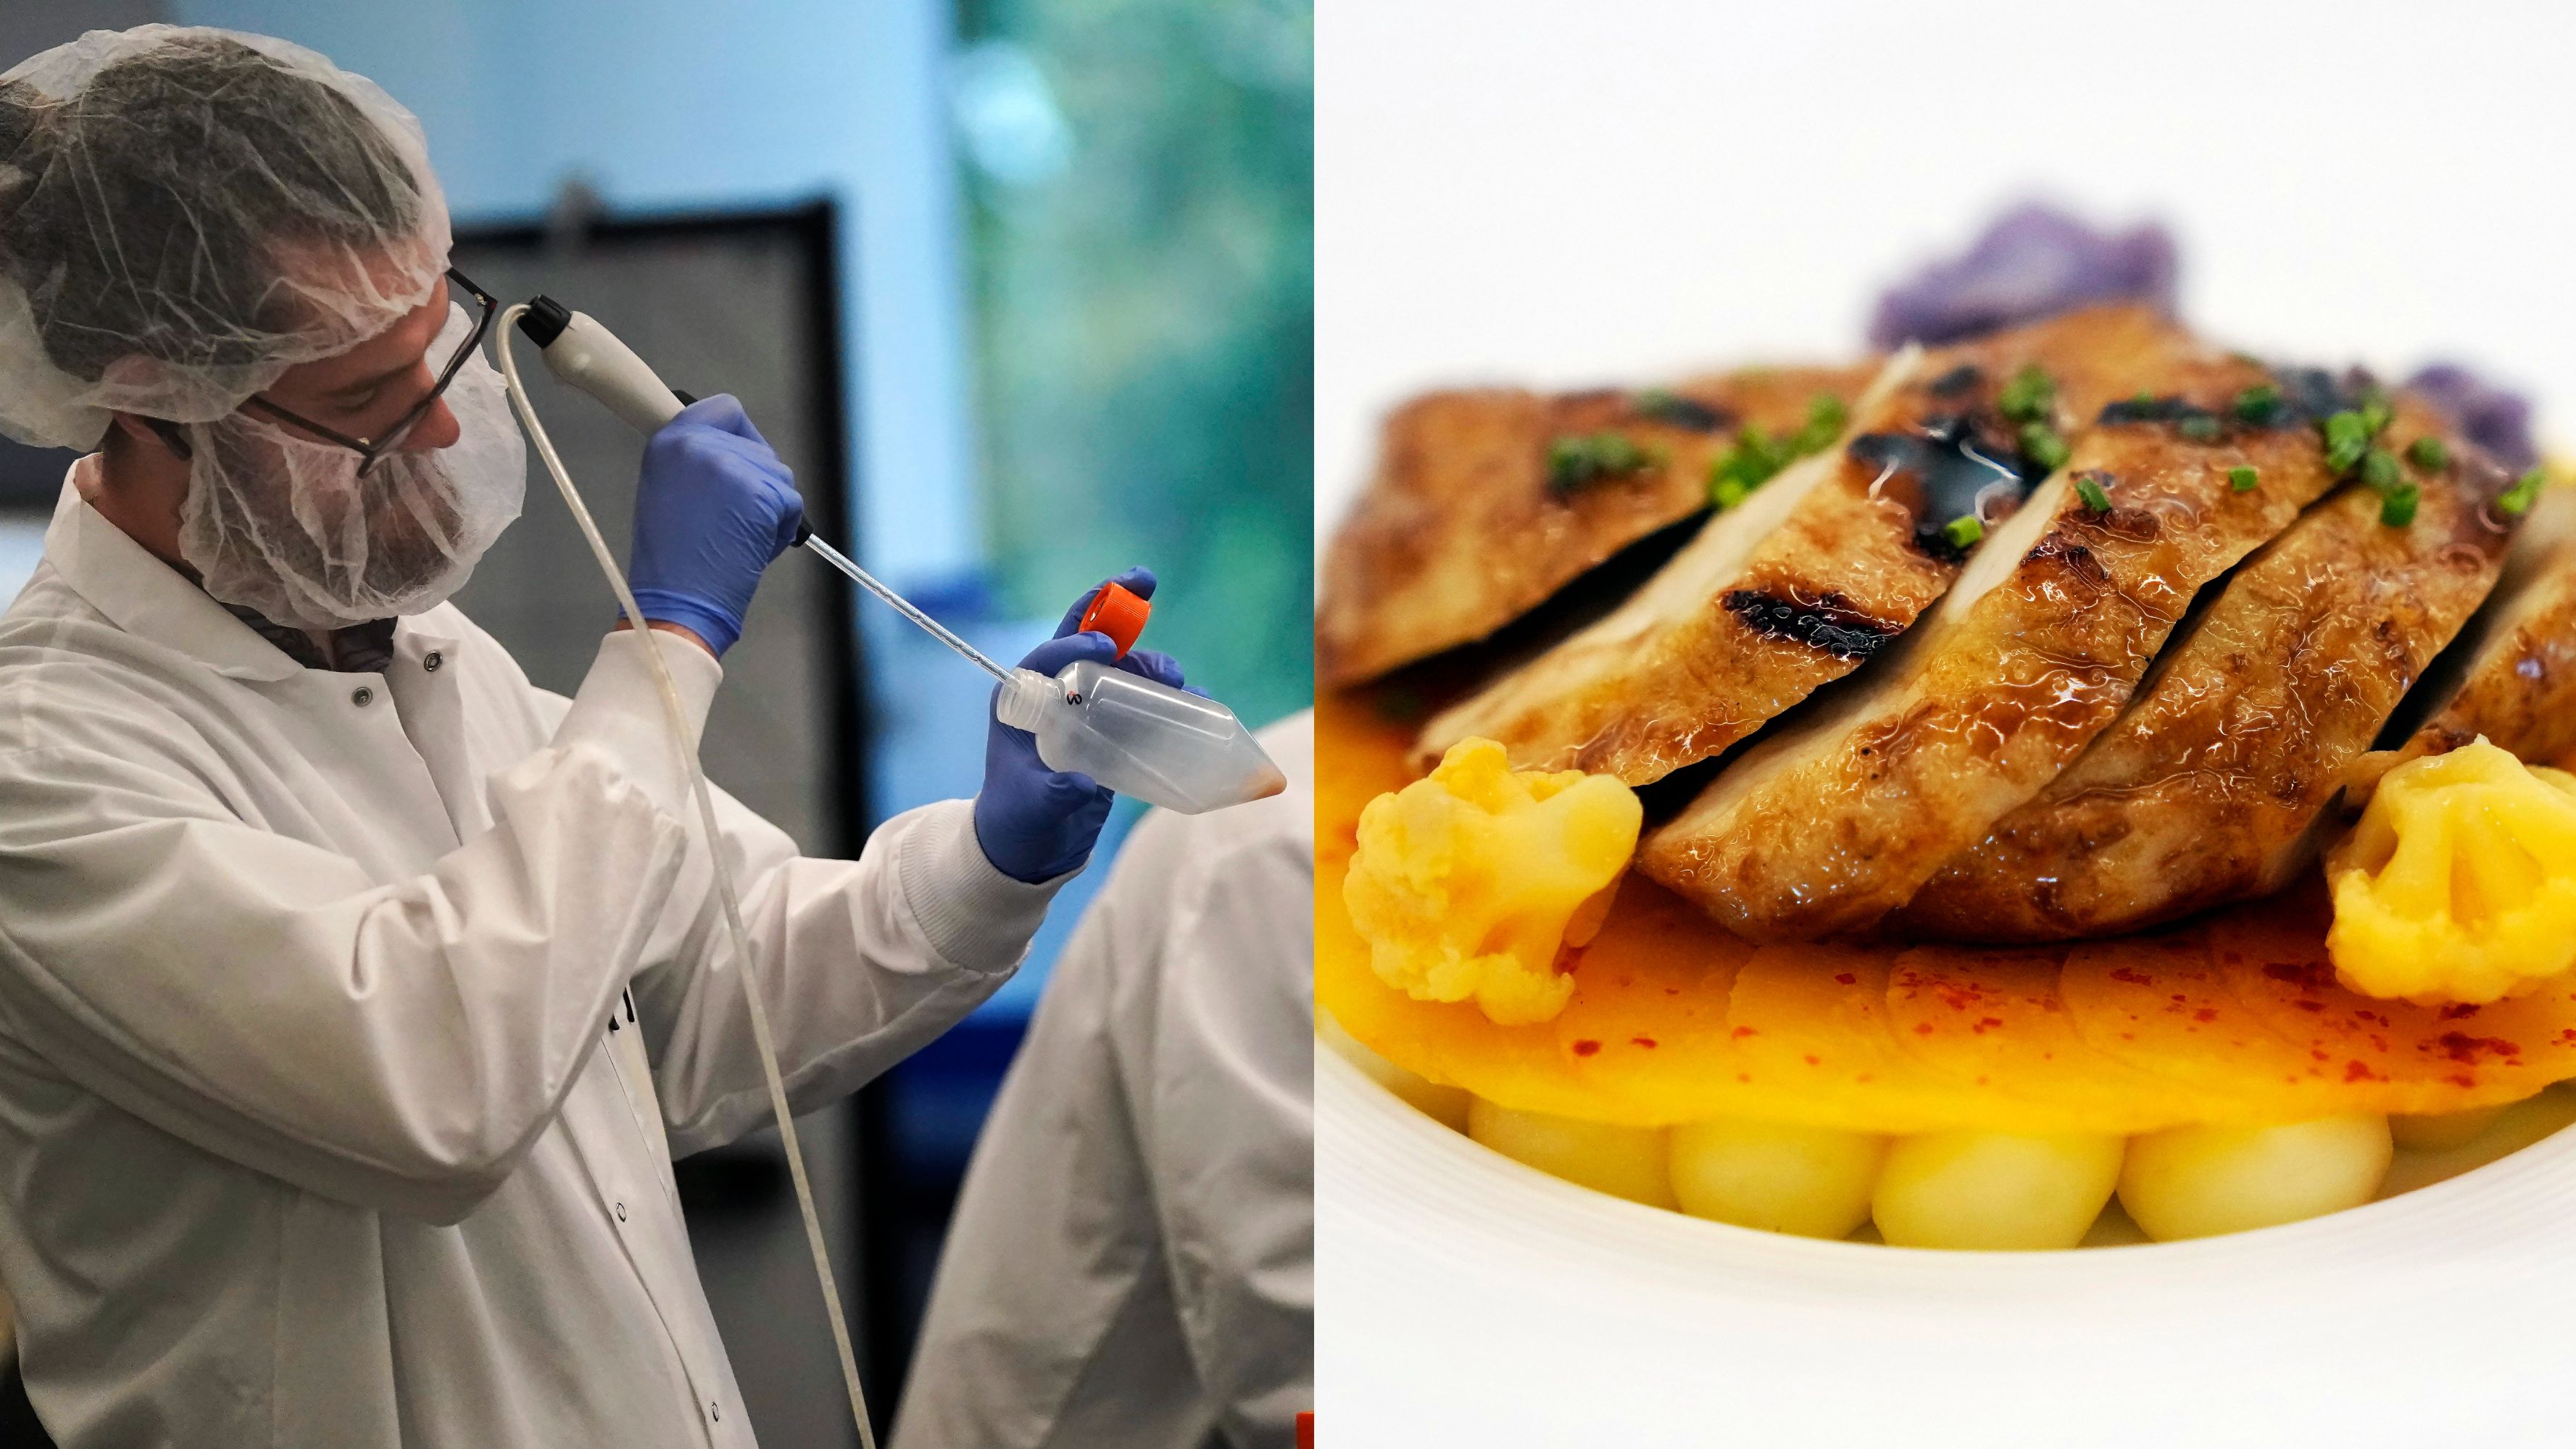 Scientists work in a bioprocess lab on manufactured food in California, U.S./ Jeff Chiu/AP